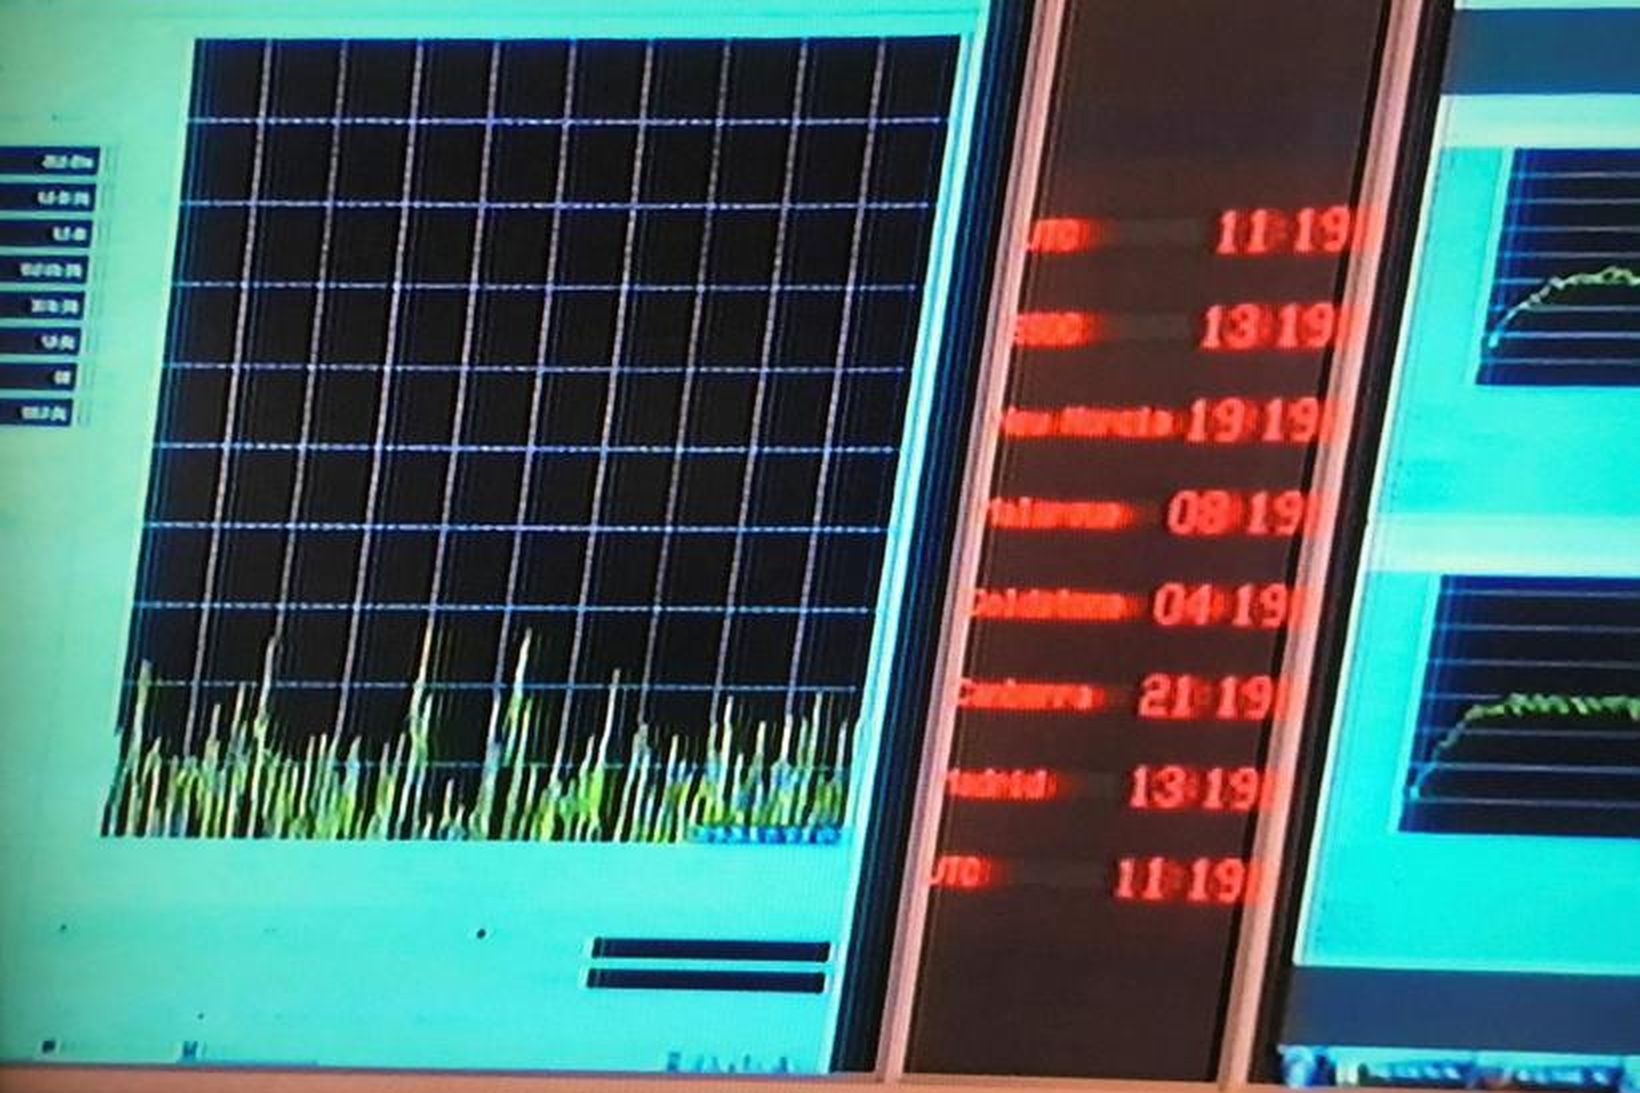 ESA missti samband við Rosettu kl. 11:19 að íslenskum tíma …